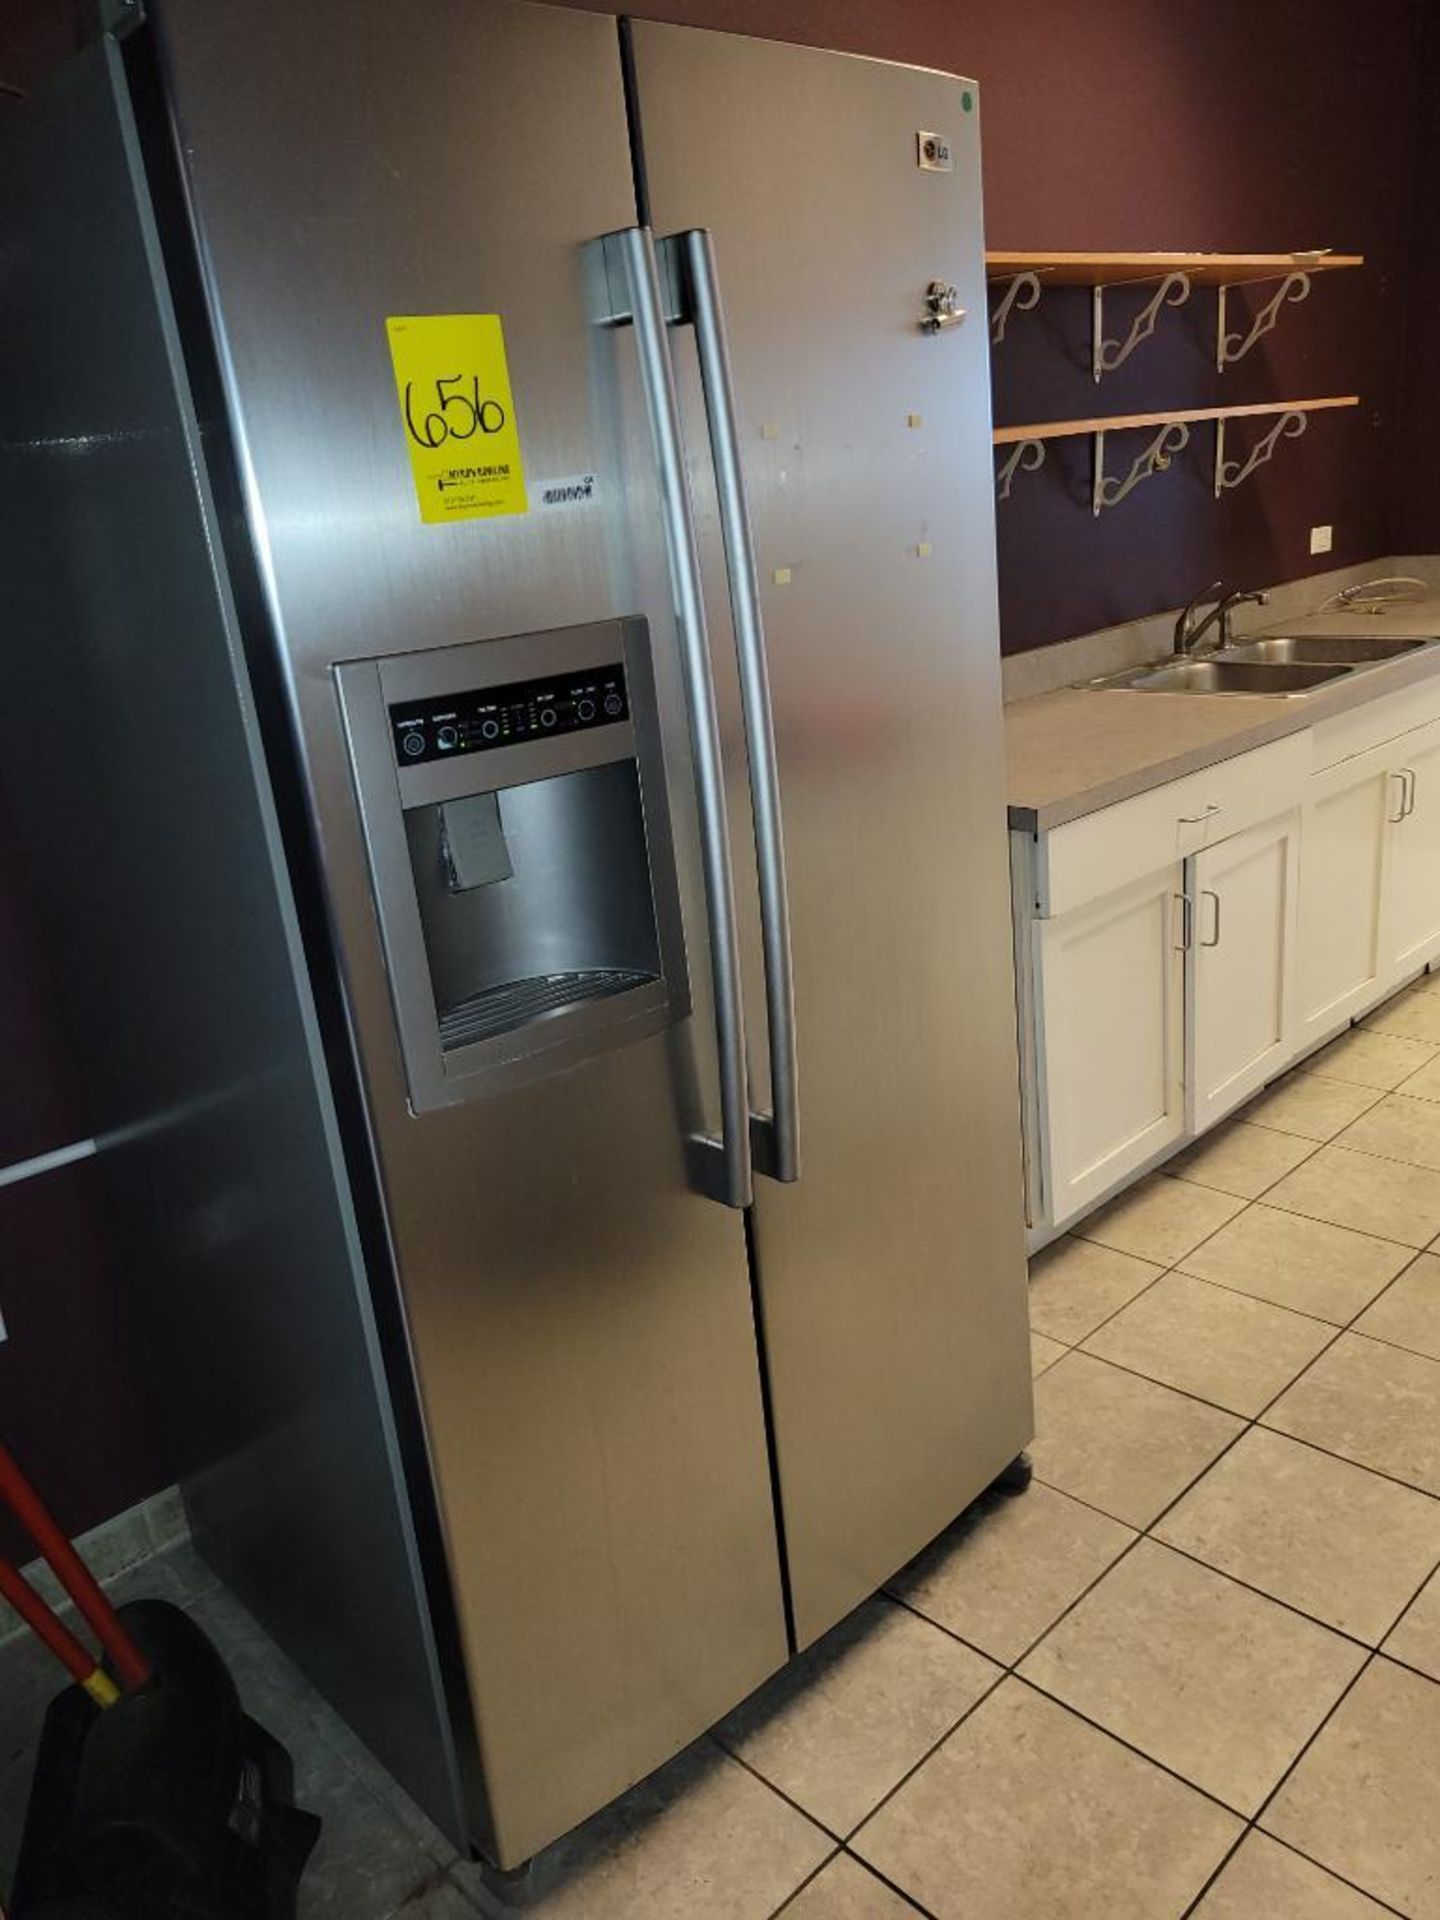 LG Stainless Steel Household Refrigerator, Model LSC26905TT, w/ Auto Ice Maker/ Dispenser